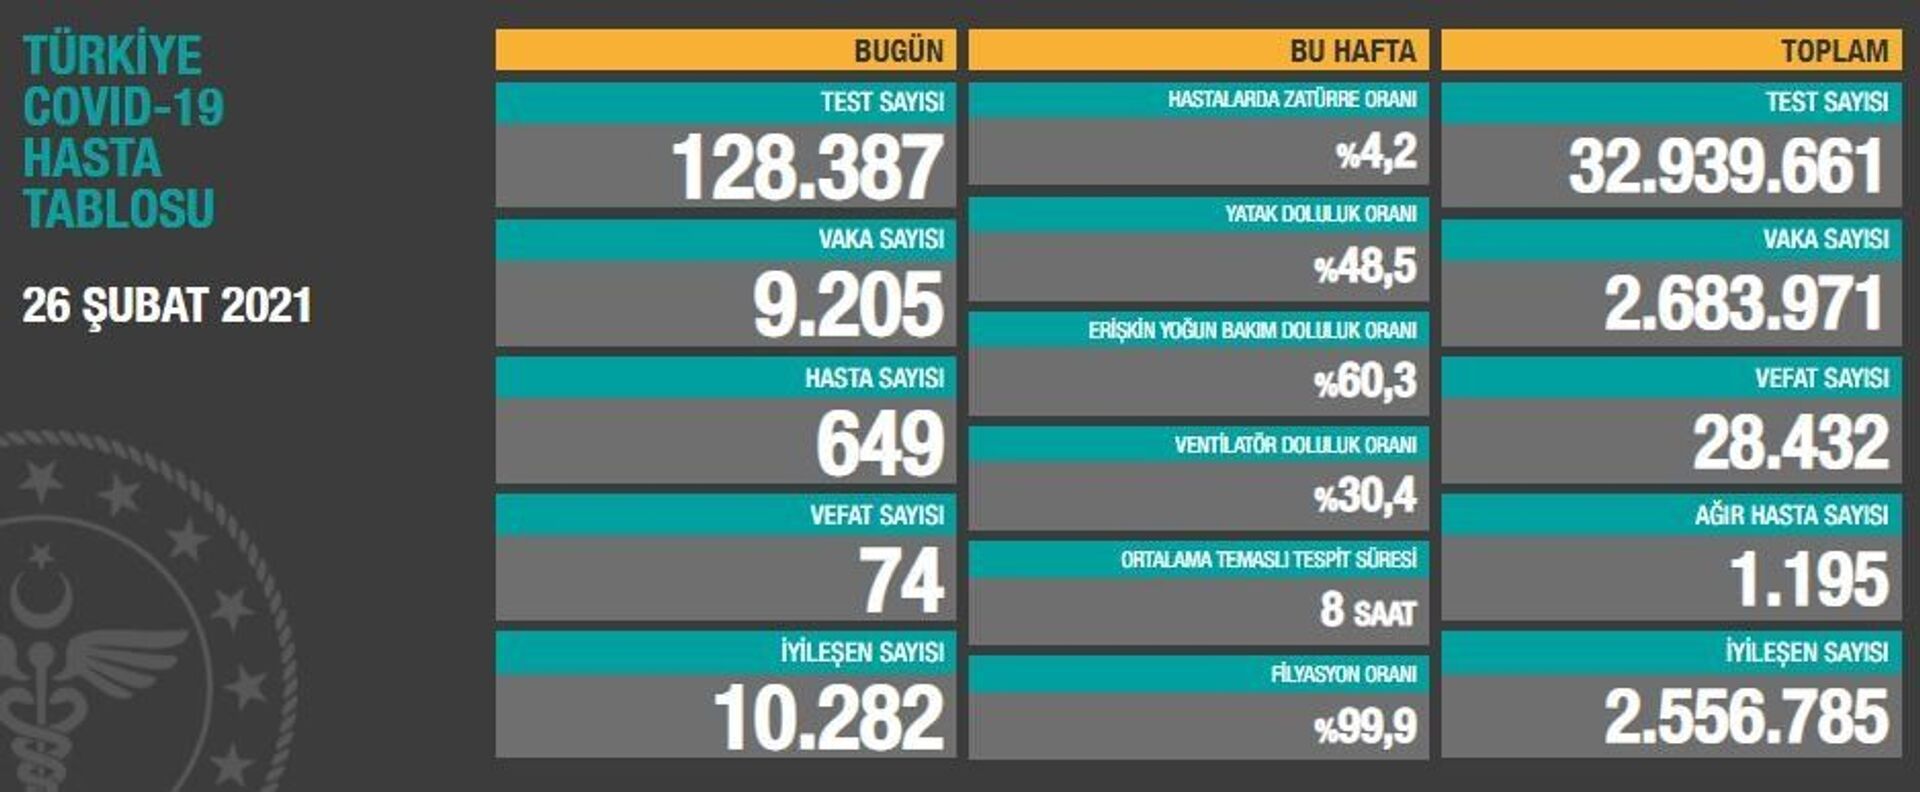 Türkiye'de koronavirüsten son 24 saatte 74 kişi hayatını kaybetti, 9 bin 205 kişinin testi pozitif çıktı - Sputnik Türkiye, 1920, 26.02.2021